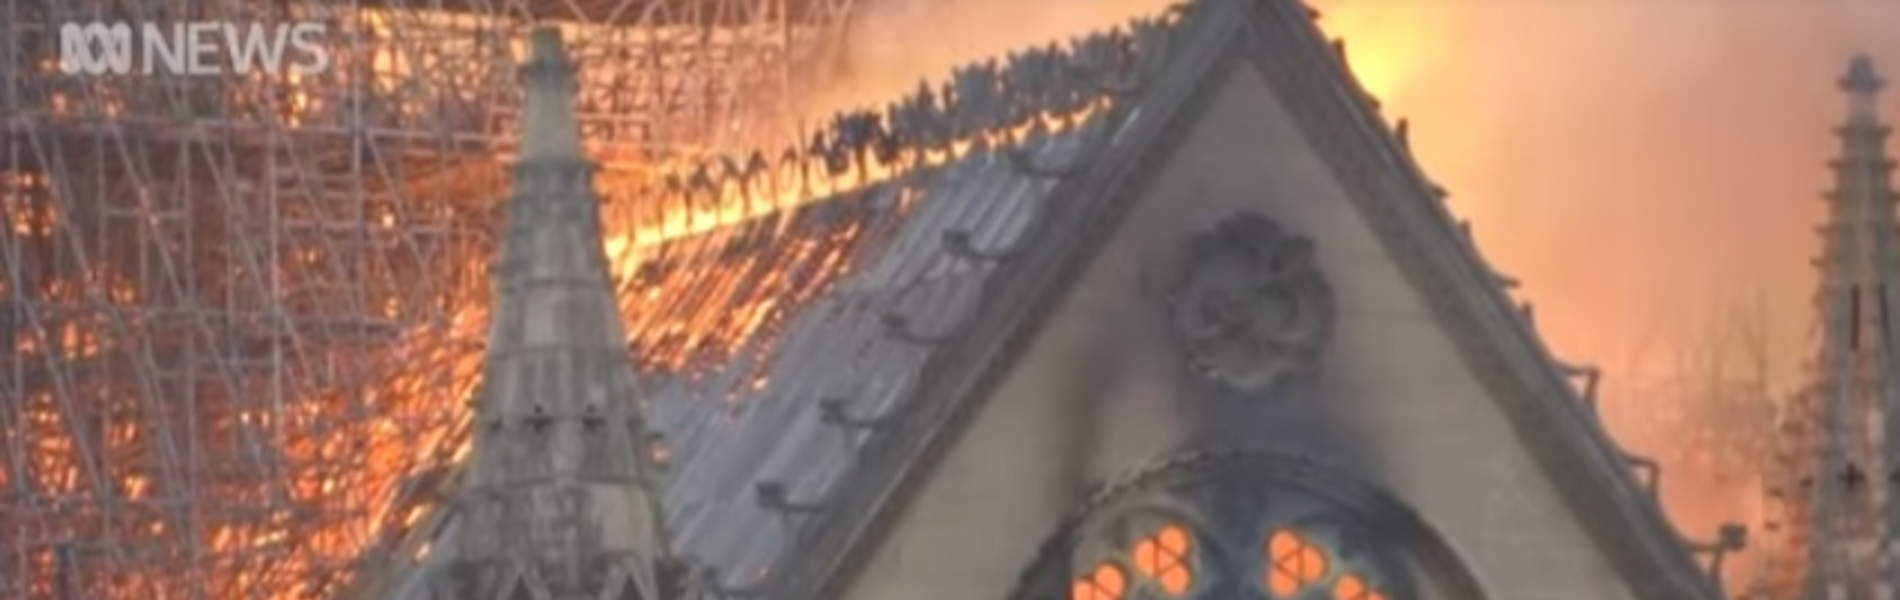 שריפת הענק בקתדרלת נוטרדאם: לשקם או להרוס כליל?